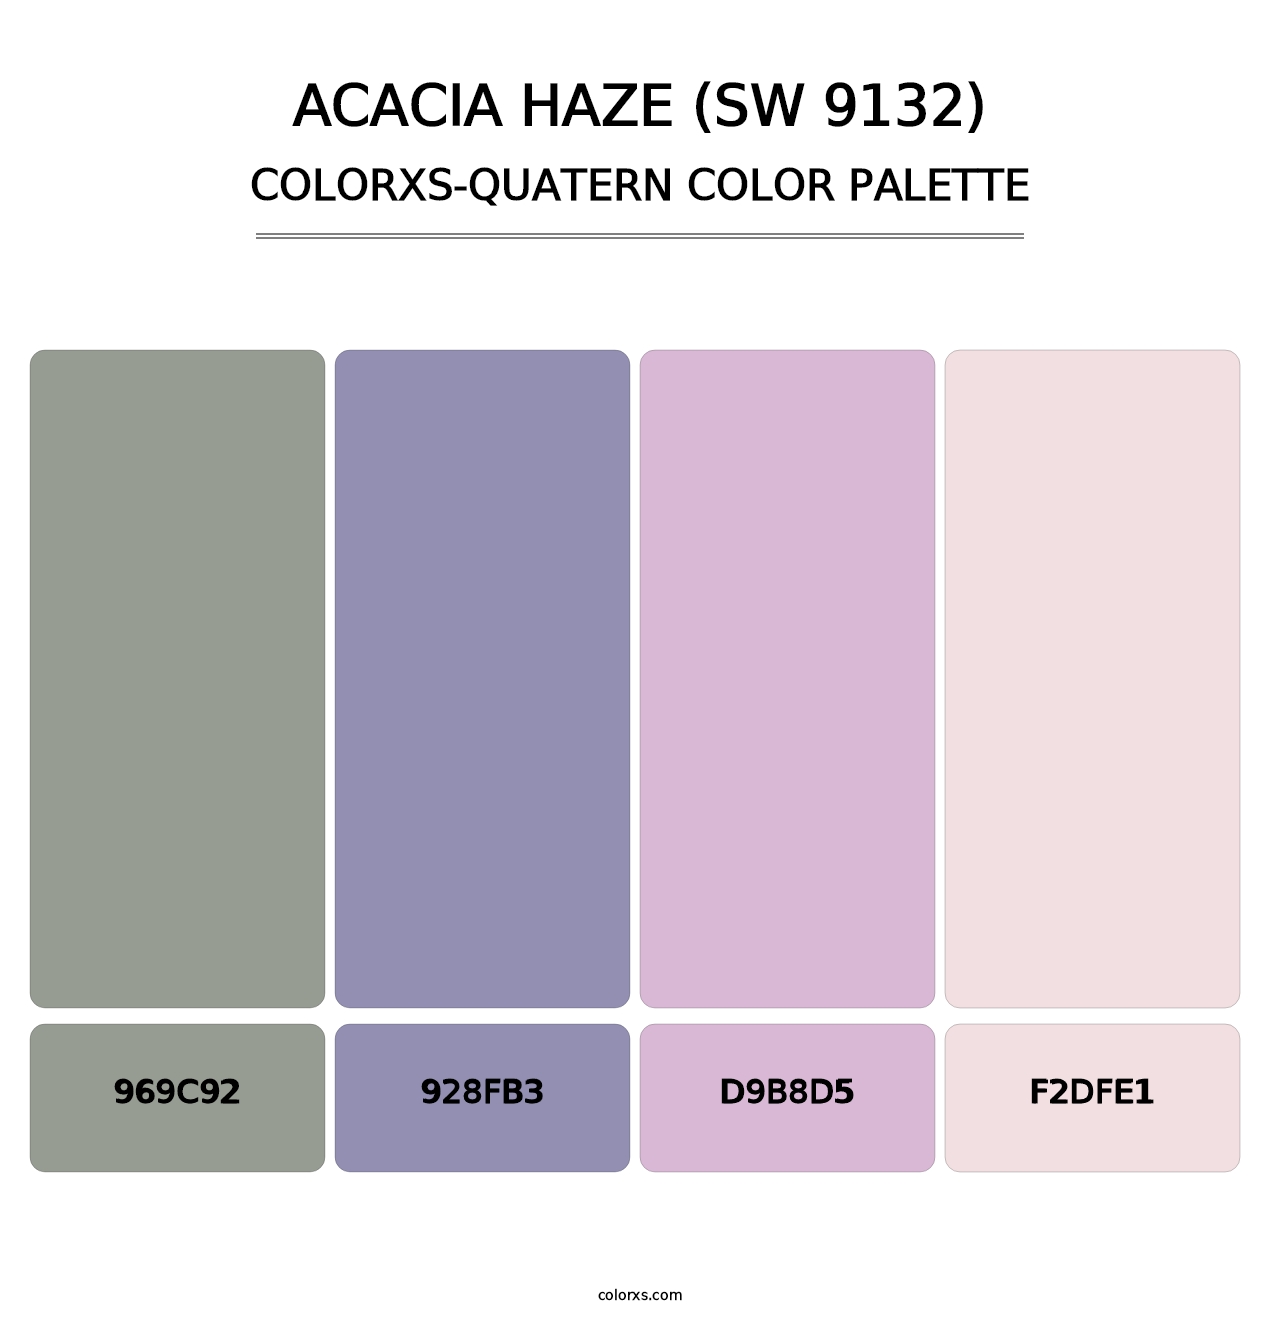 Acacia Haze (SW 9132) - Colorxs Quatern Palette